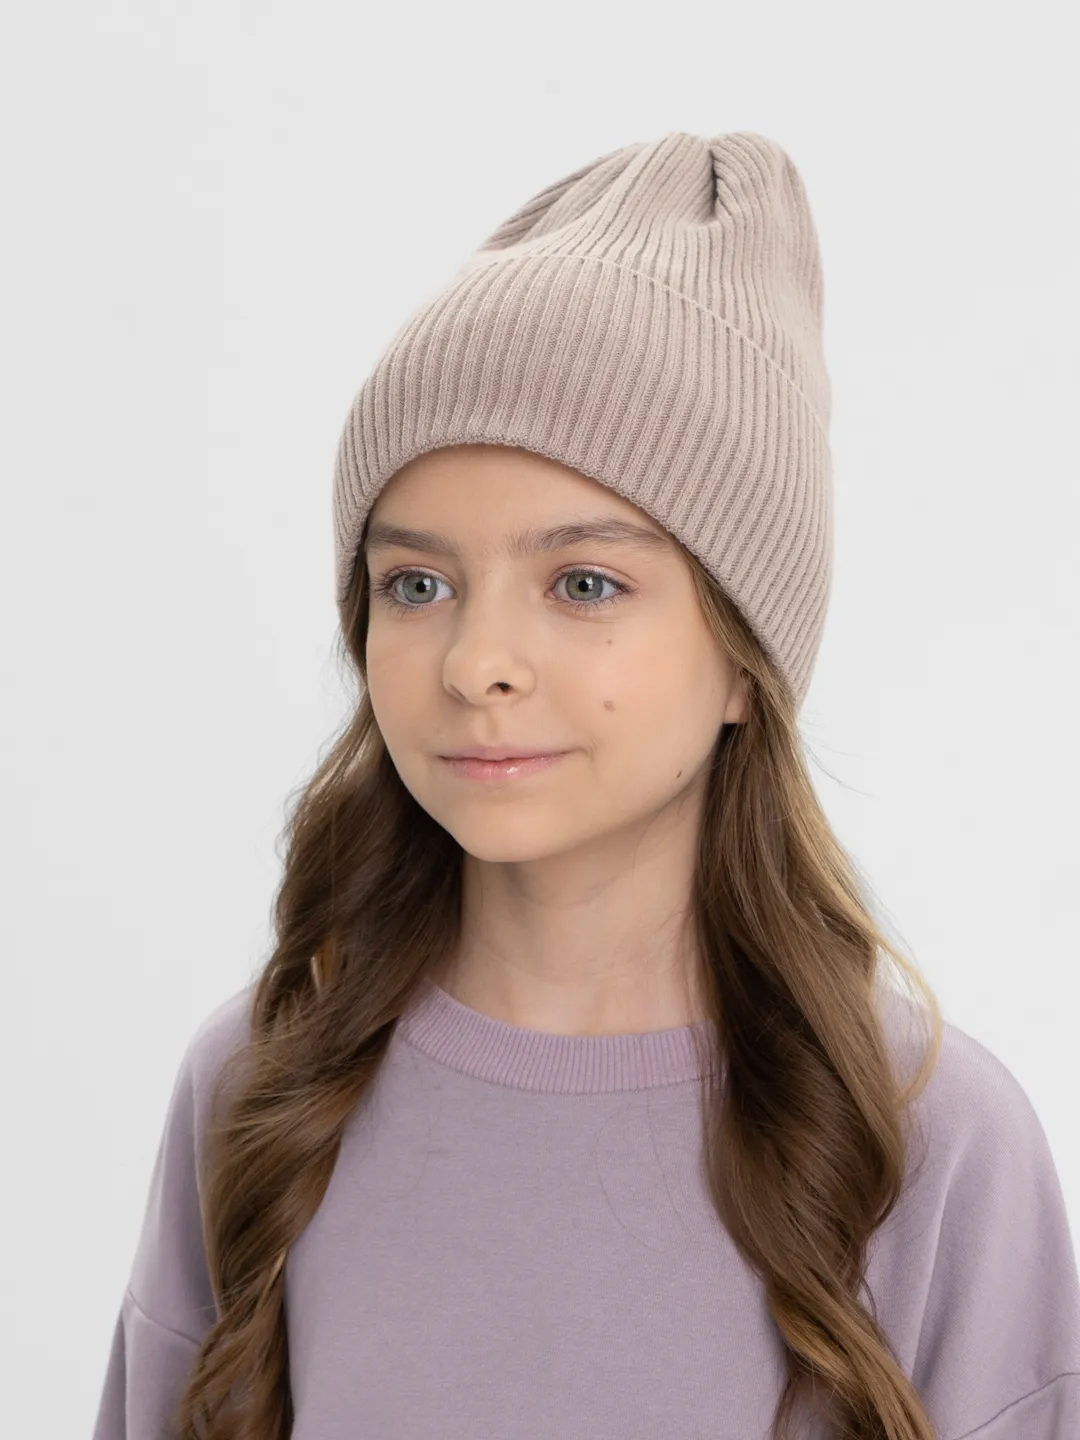 Зимняя вязаная шапка для девочки, цвет пудра, размер 46-50